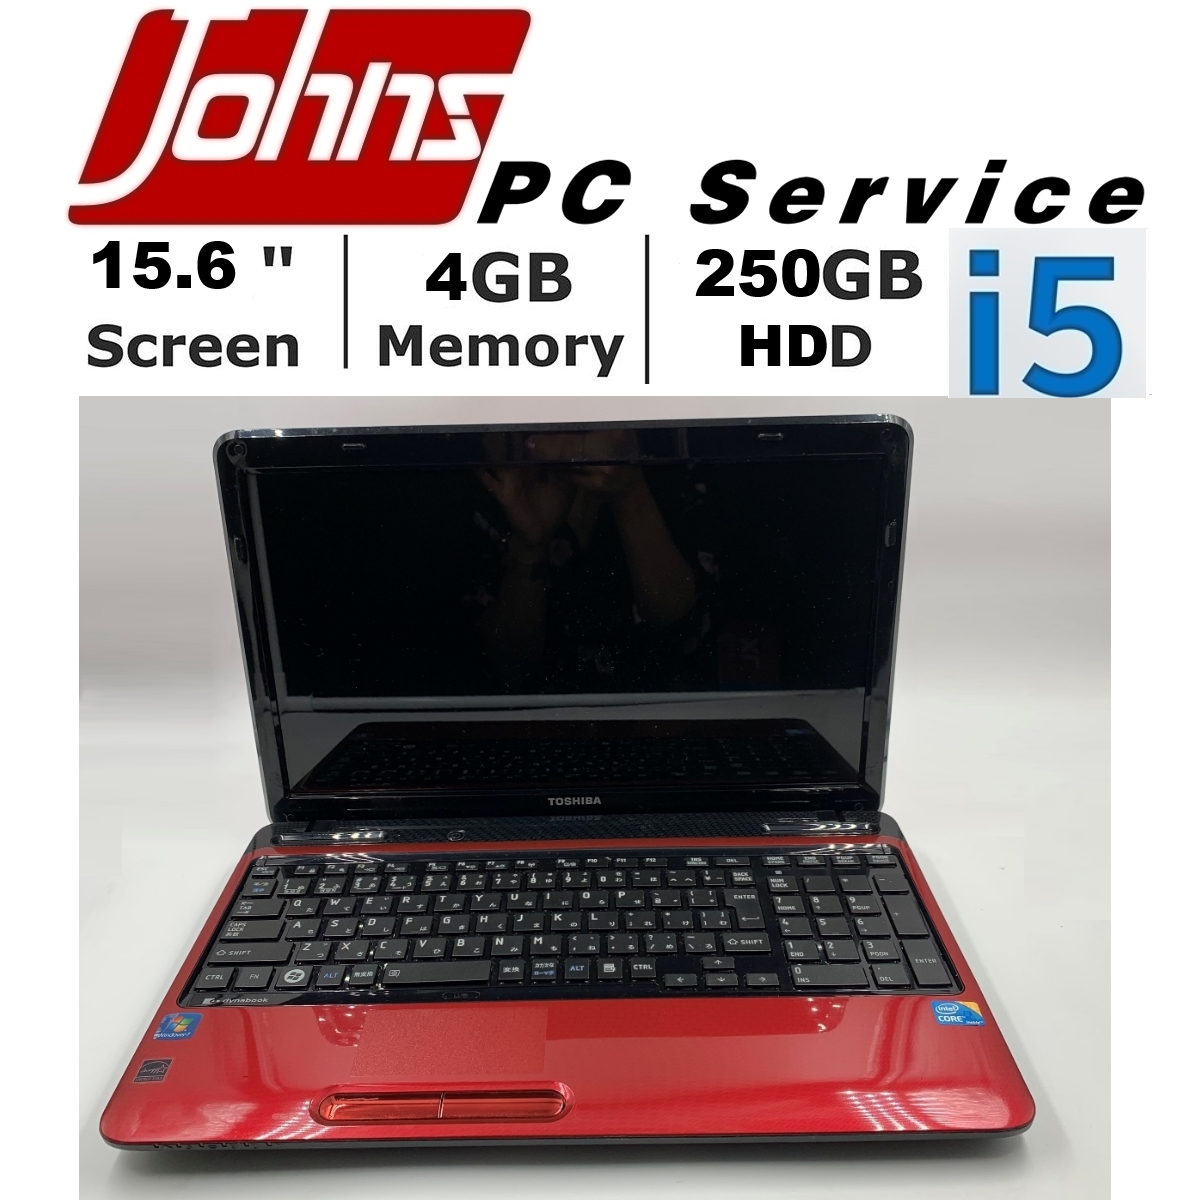 โน๊ตบุ๊คมือสอง Notebook ราคาถูกๆ Toshiba L650 i5/i3 15.6 นิ้ว 4G/250GB โน๊ตบุ๊ค laptop มือสอง โน็ตบุ๊คมือ2 โน้ตบุ๊คถูกๆ โน๊ตบุ๊คมือสอง2